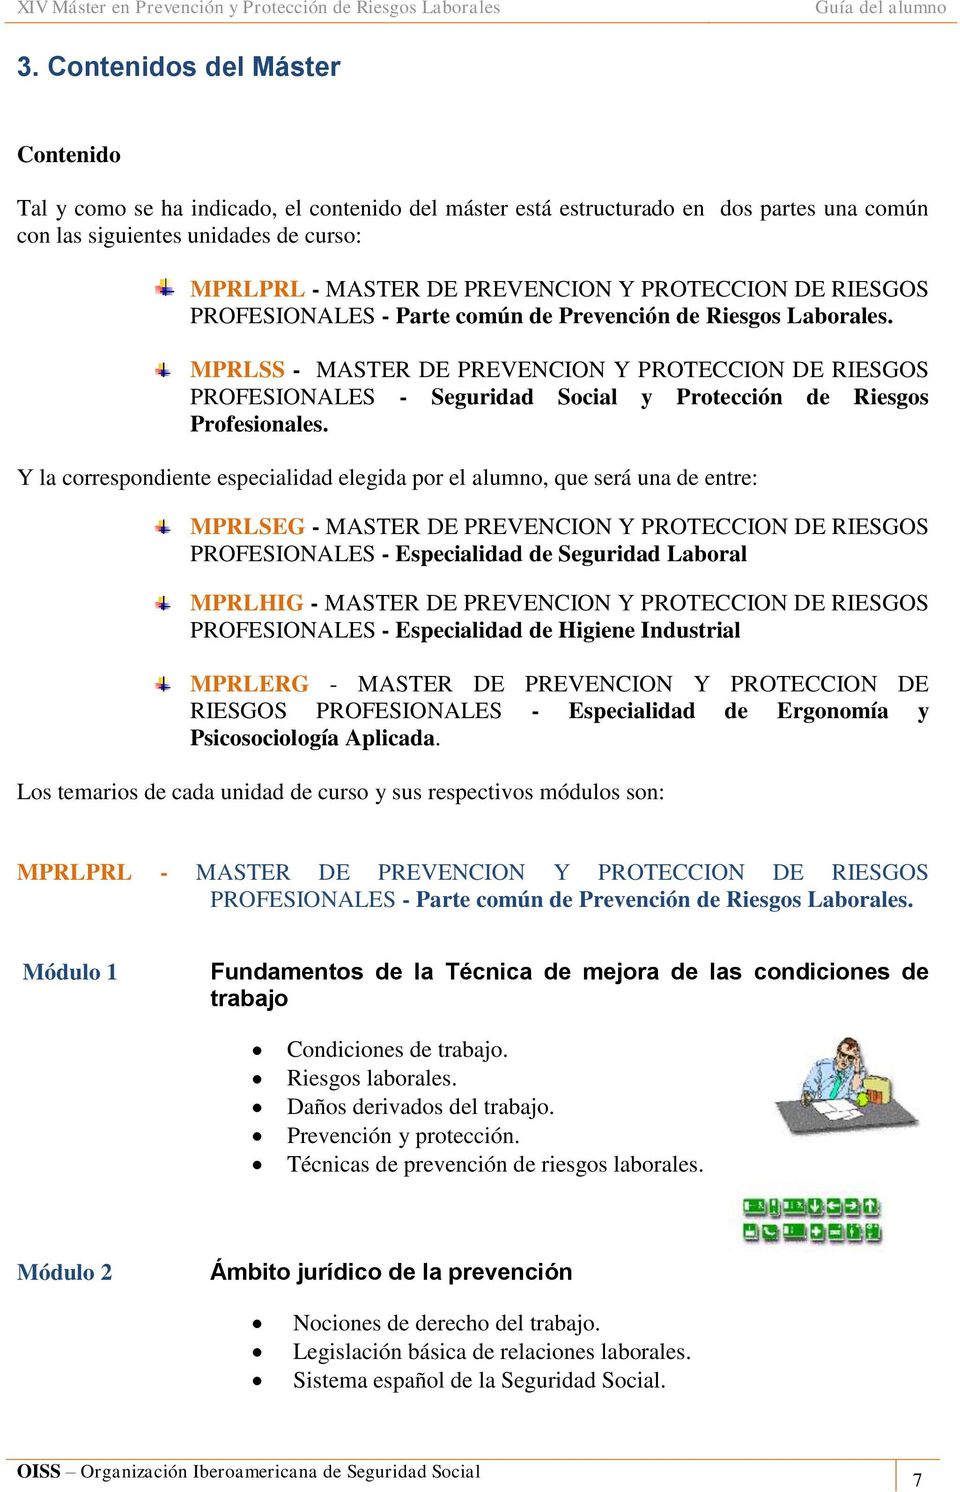 MPRLSS - MASTER DE PREVENCION Y PROTECCION DE RIESGOS PROFESIONALES - Seguridad Social y Protección de Riesgos Profesionales.